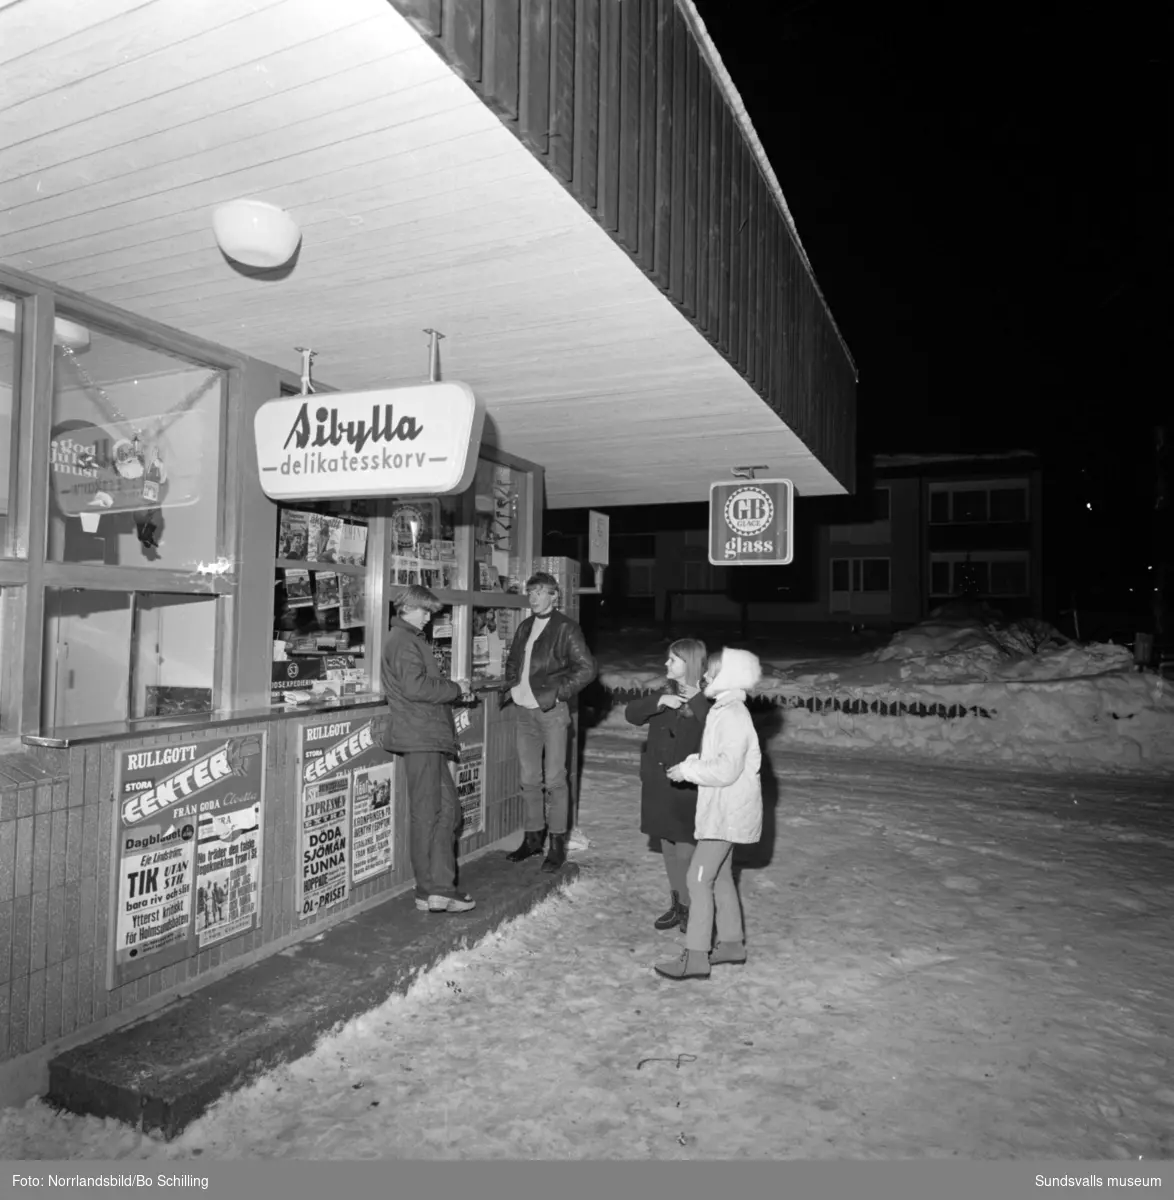 Bildserie från ett reportage i Expressen om ungdomar i Hassela. Ungdomsgård, fik, kiosk, jukebox.